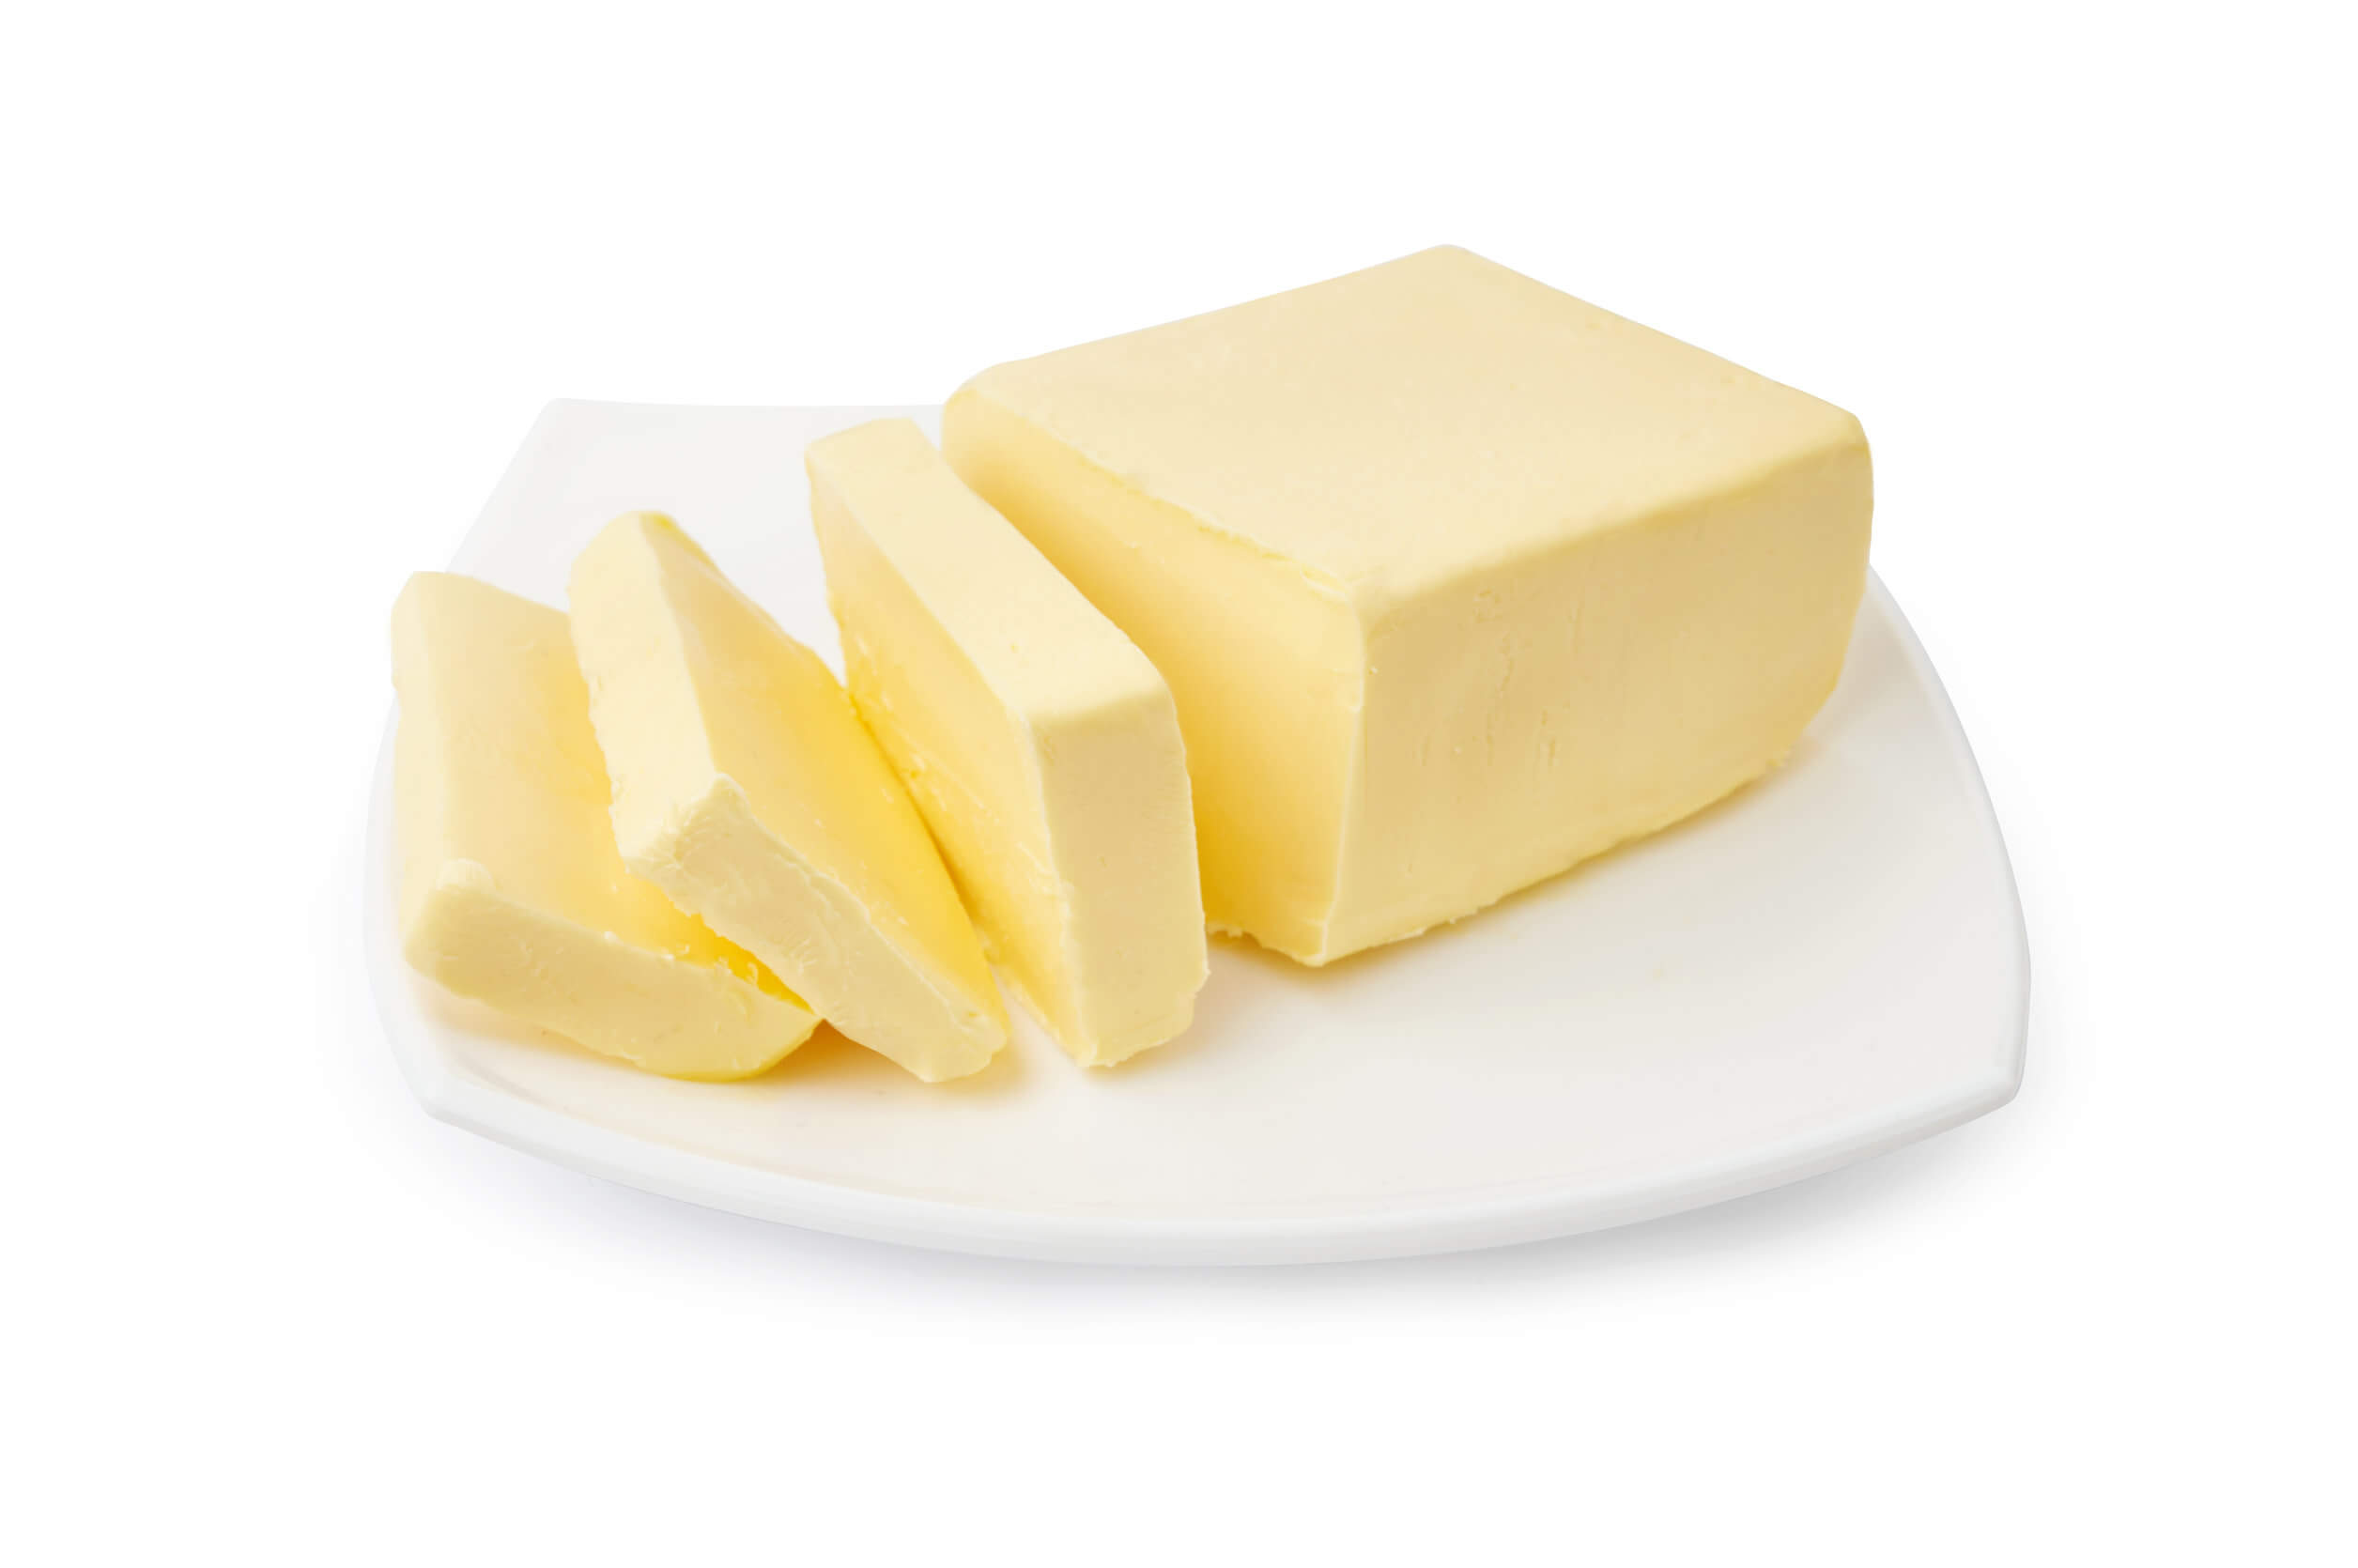 La vitamine A est dans le beurre cru.